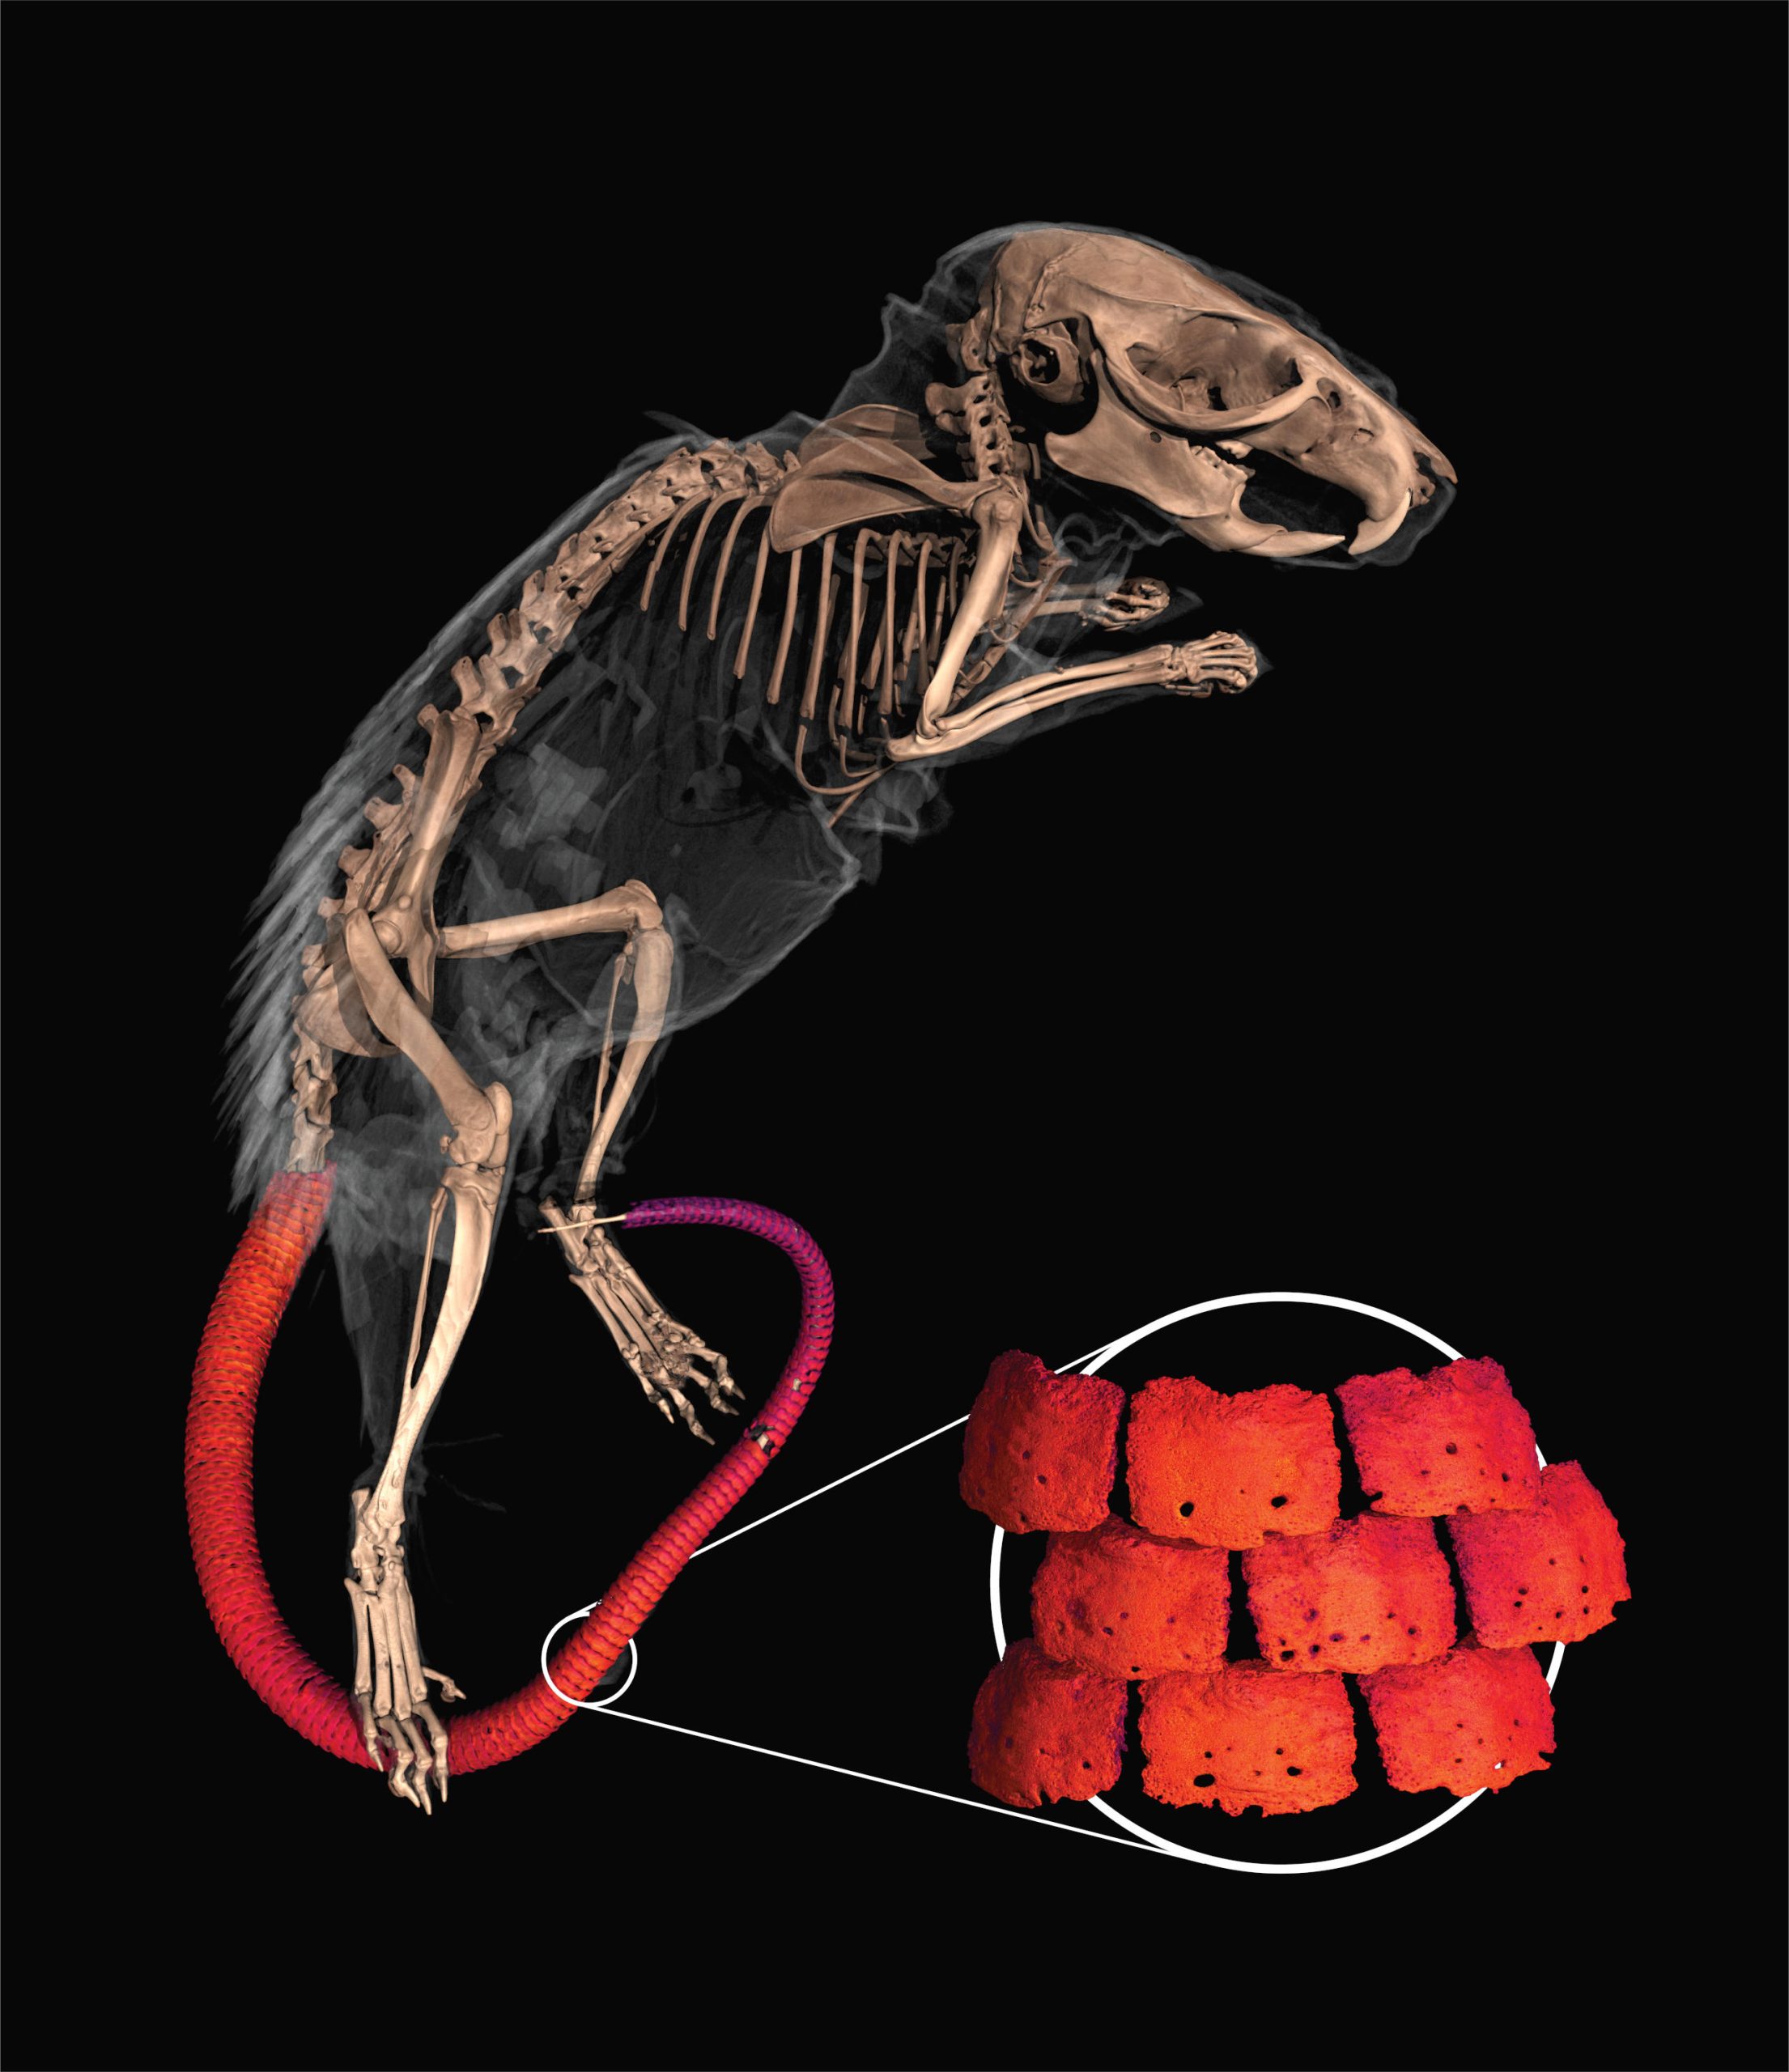 Escudo umbilical de la rata espinosa africana